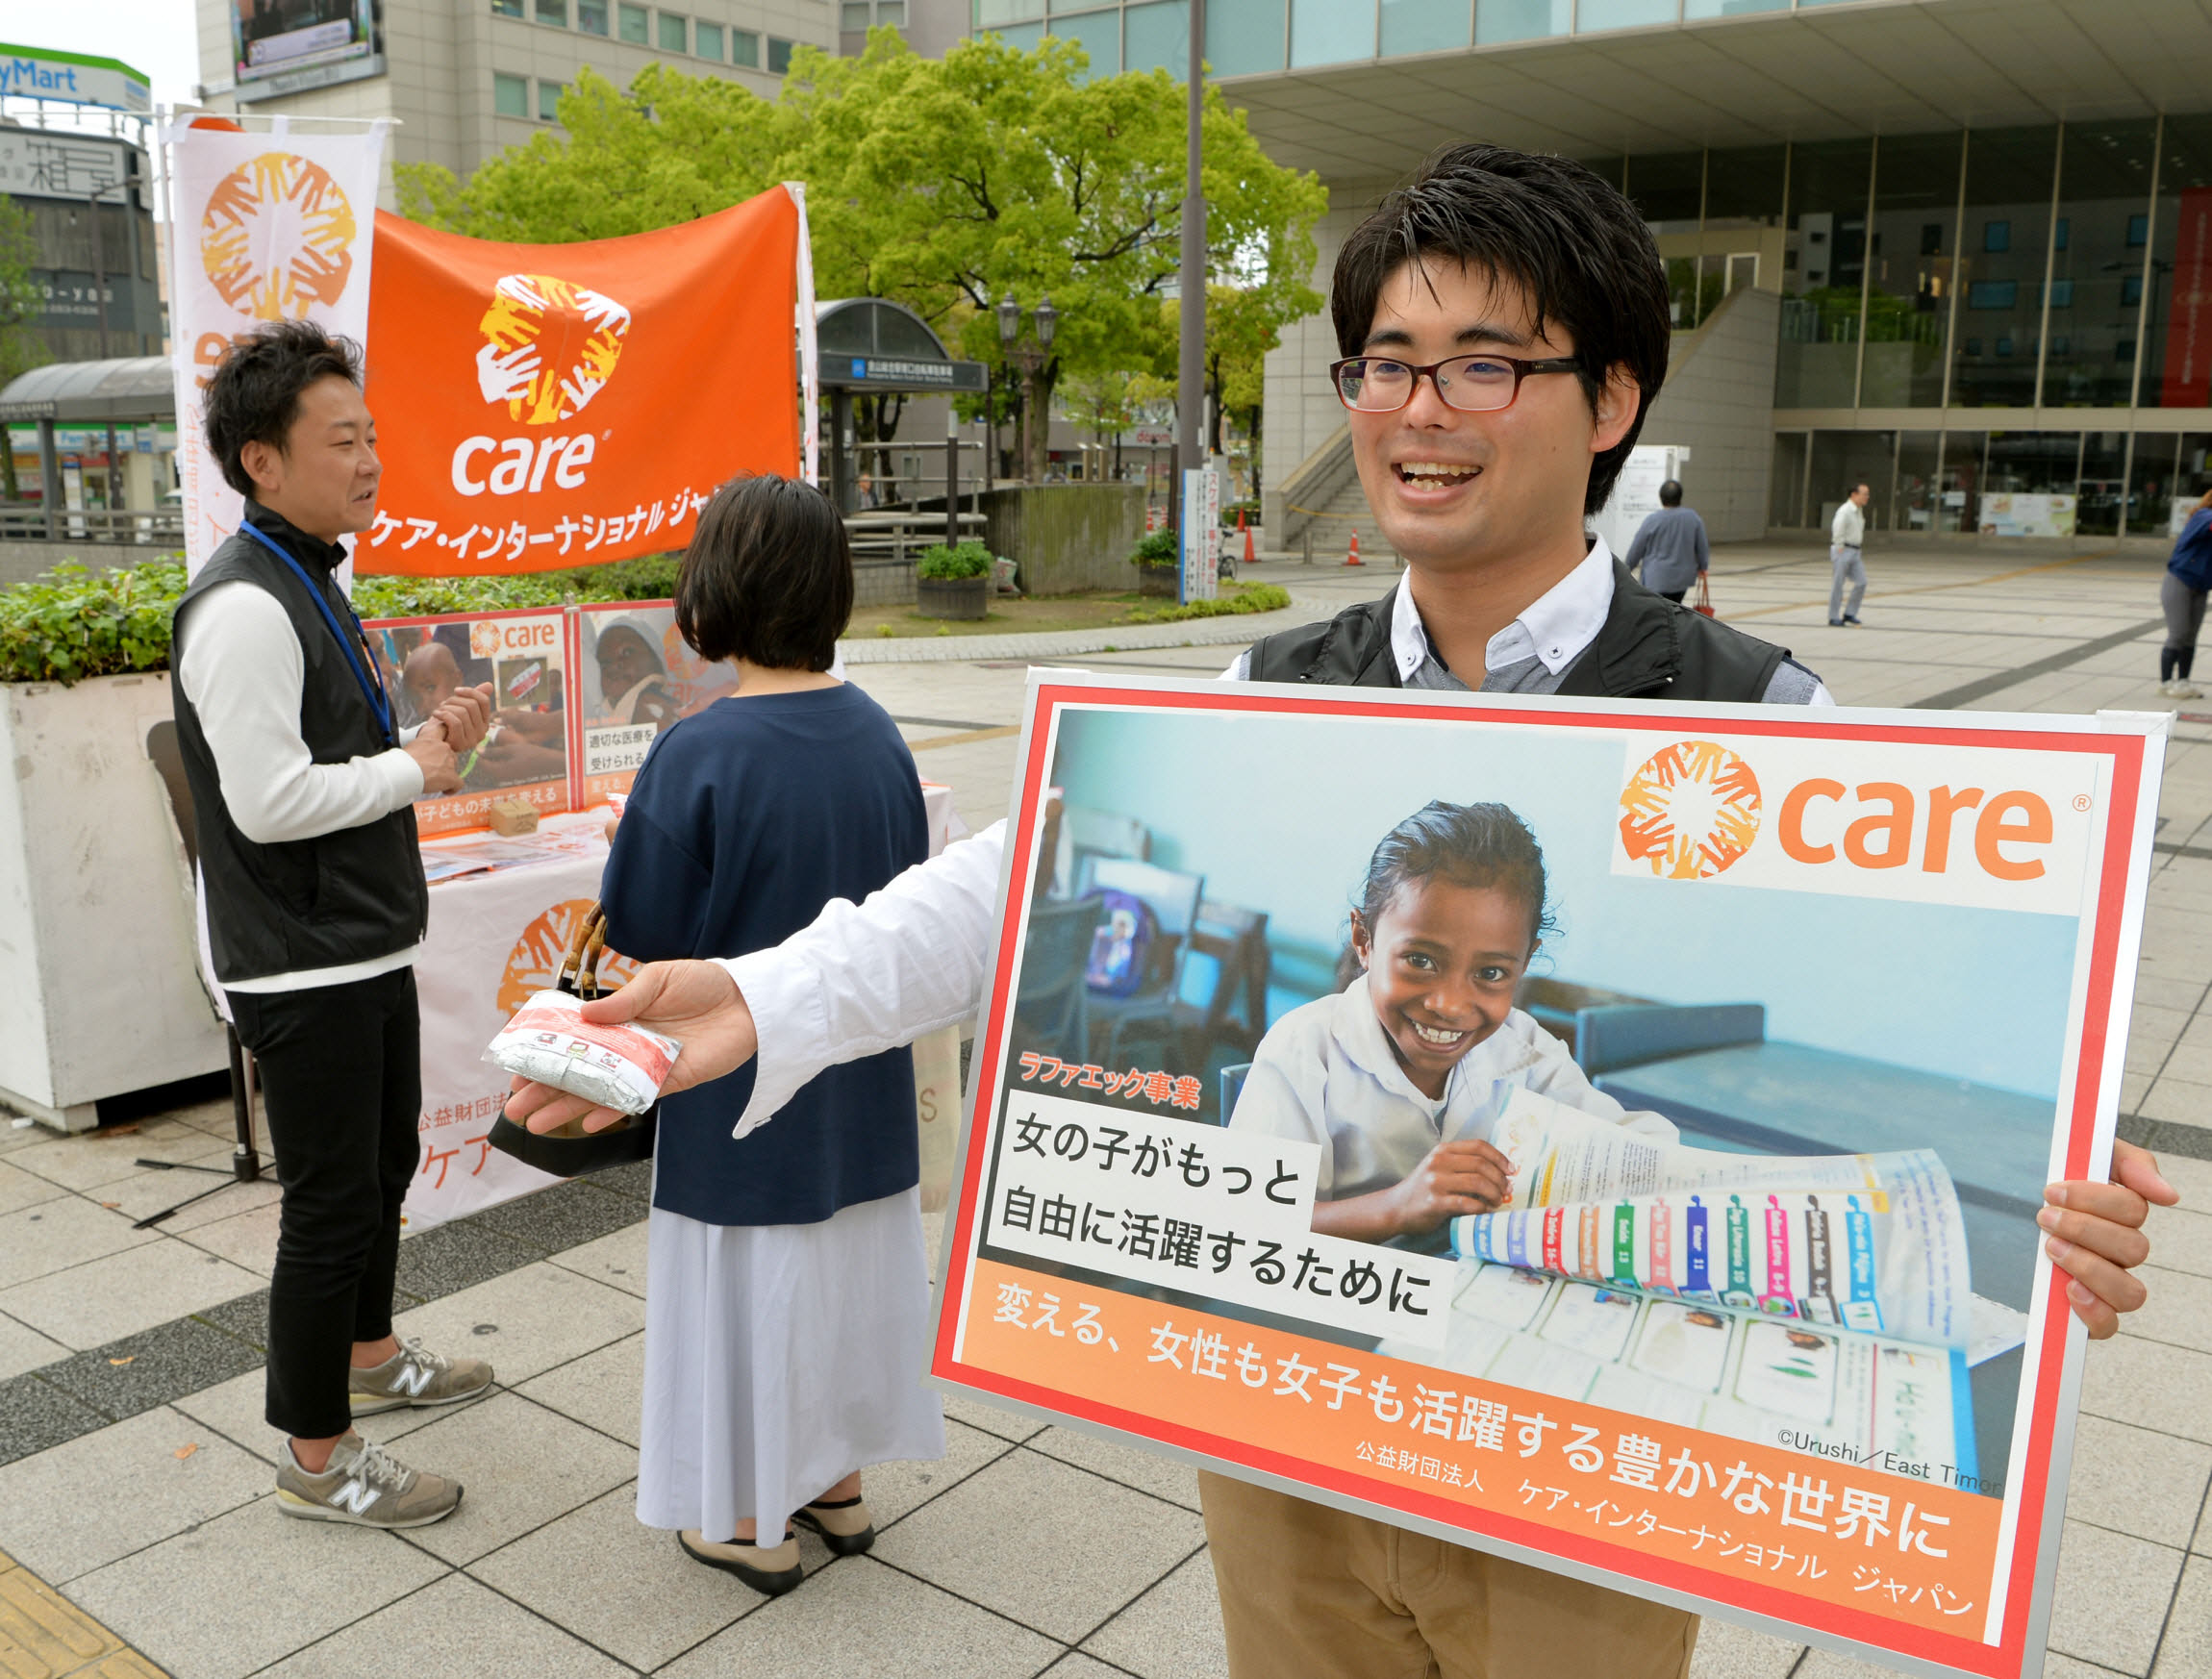 【7月開催】名古屋近郊で街頭キャンペーンを実施しています